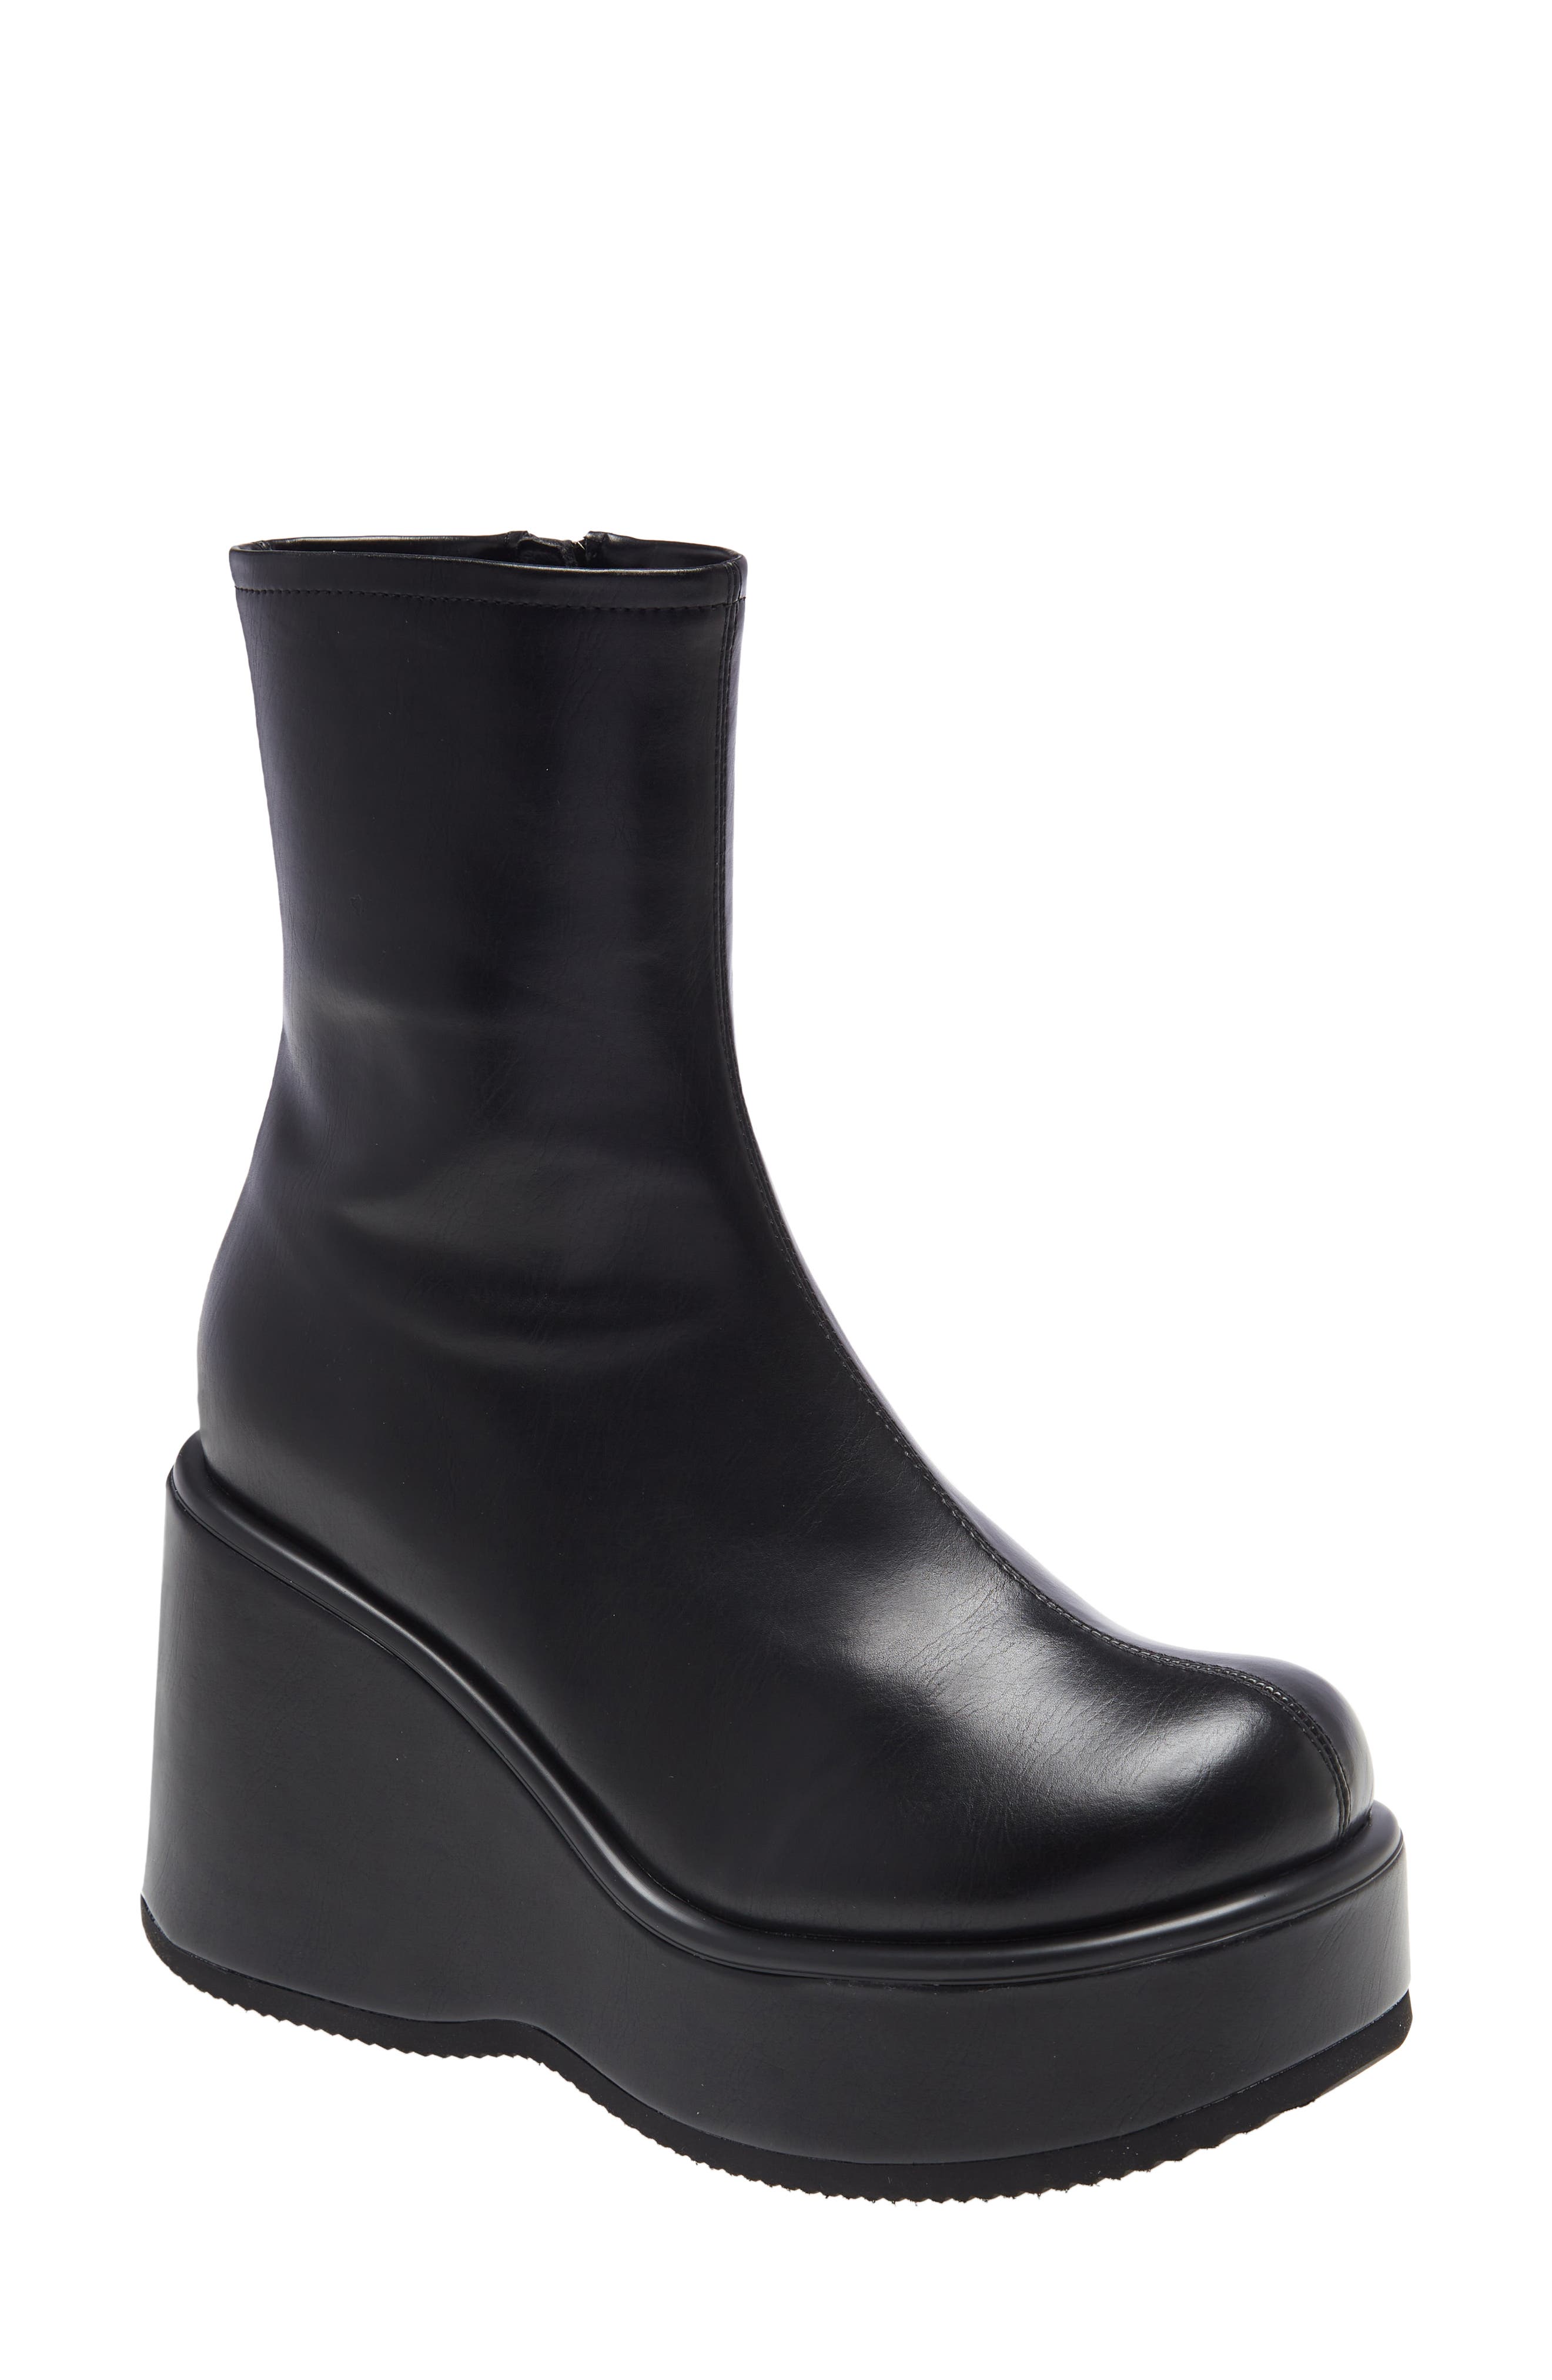 wide calf boot brands 272124 1688059898181